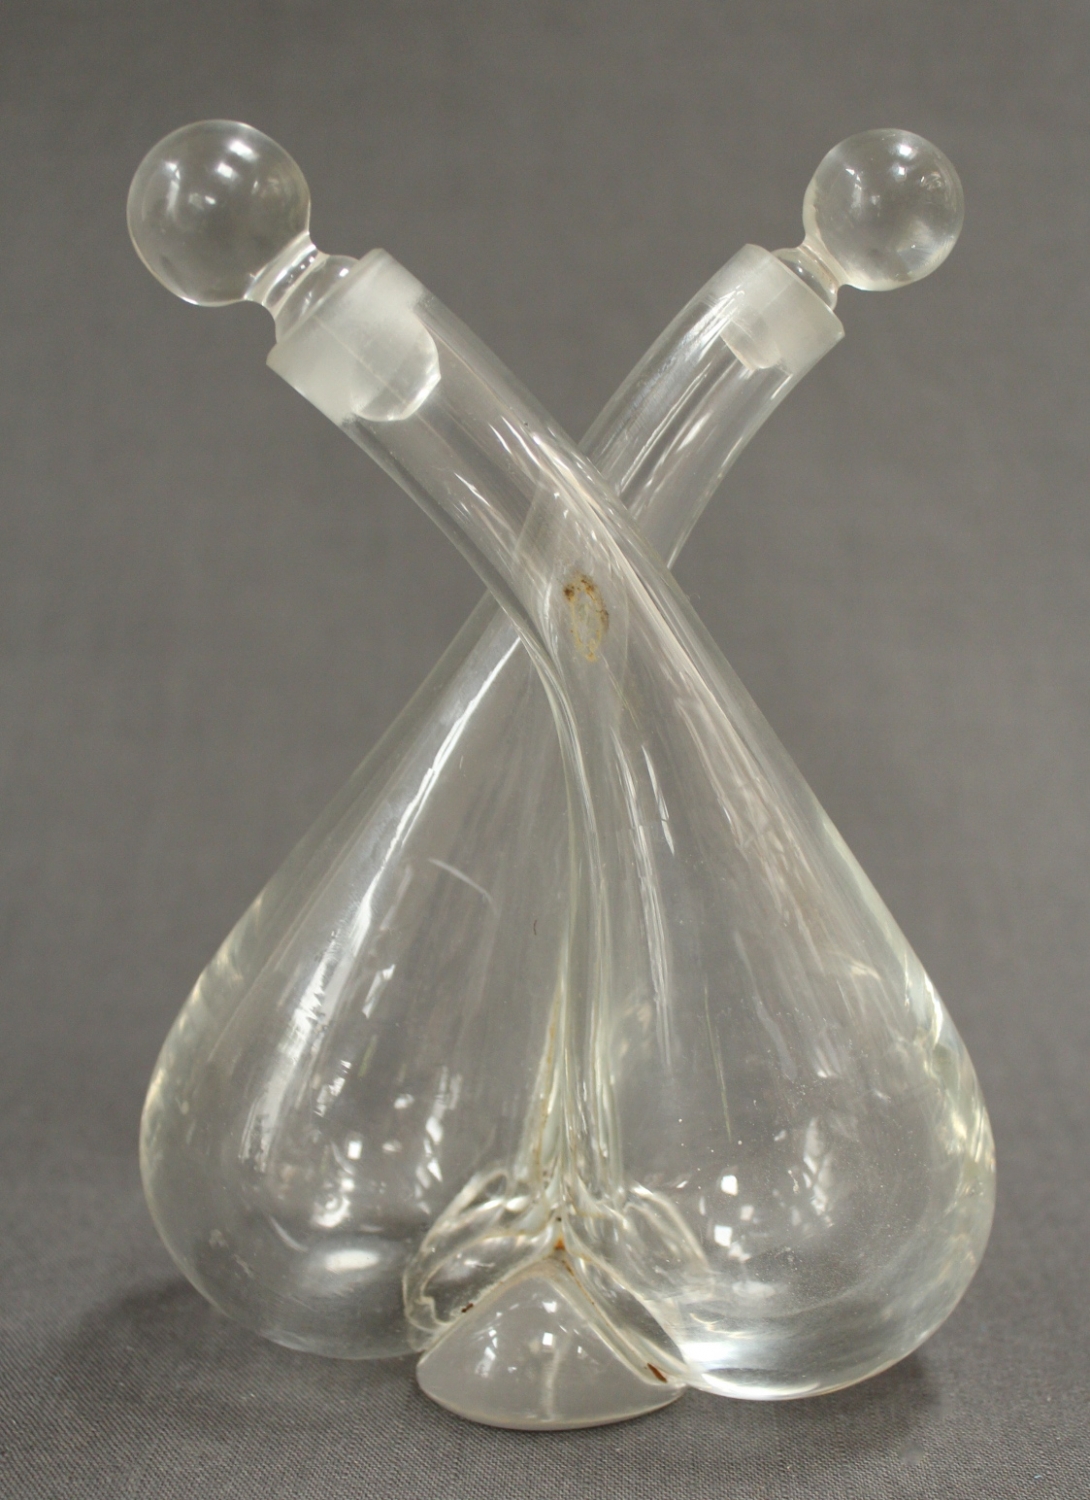 An Edwardian glass cross-over decanter